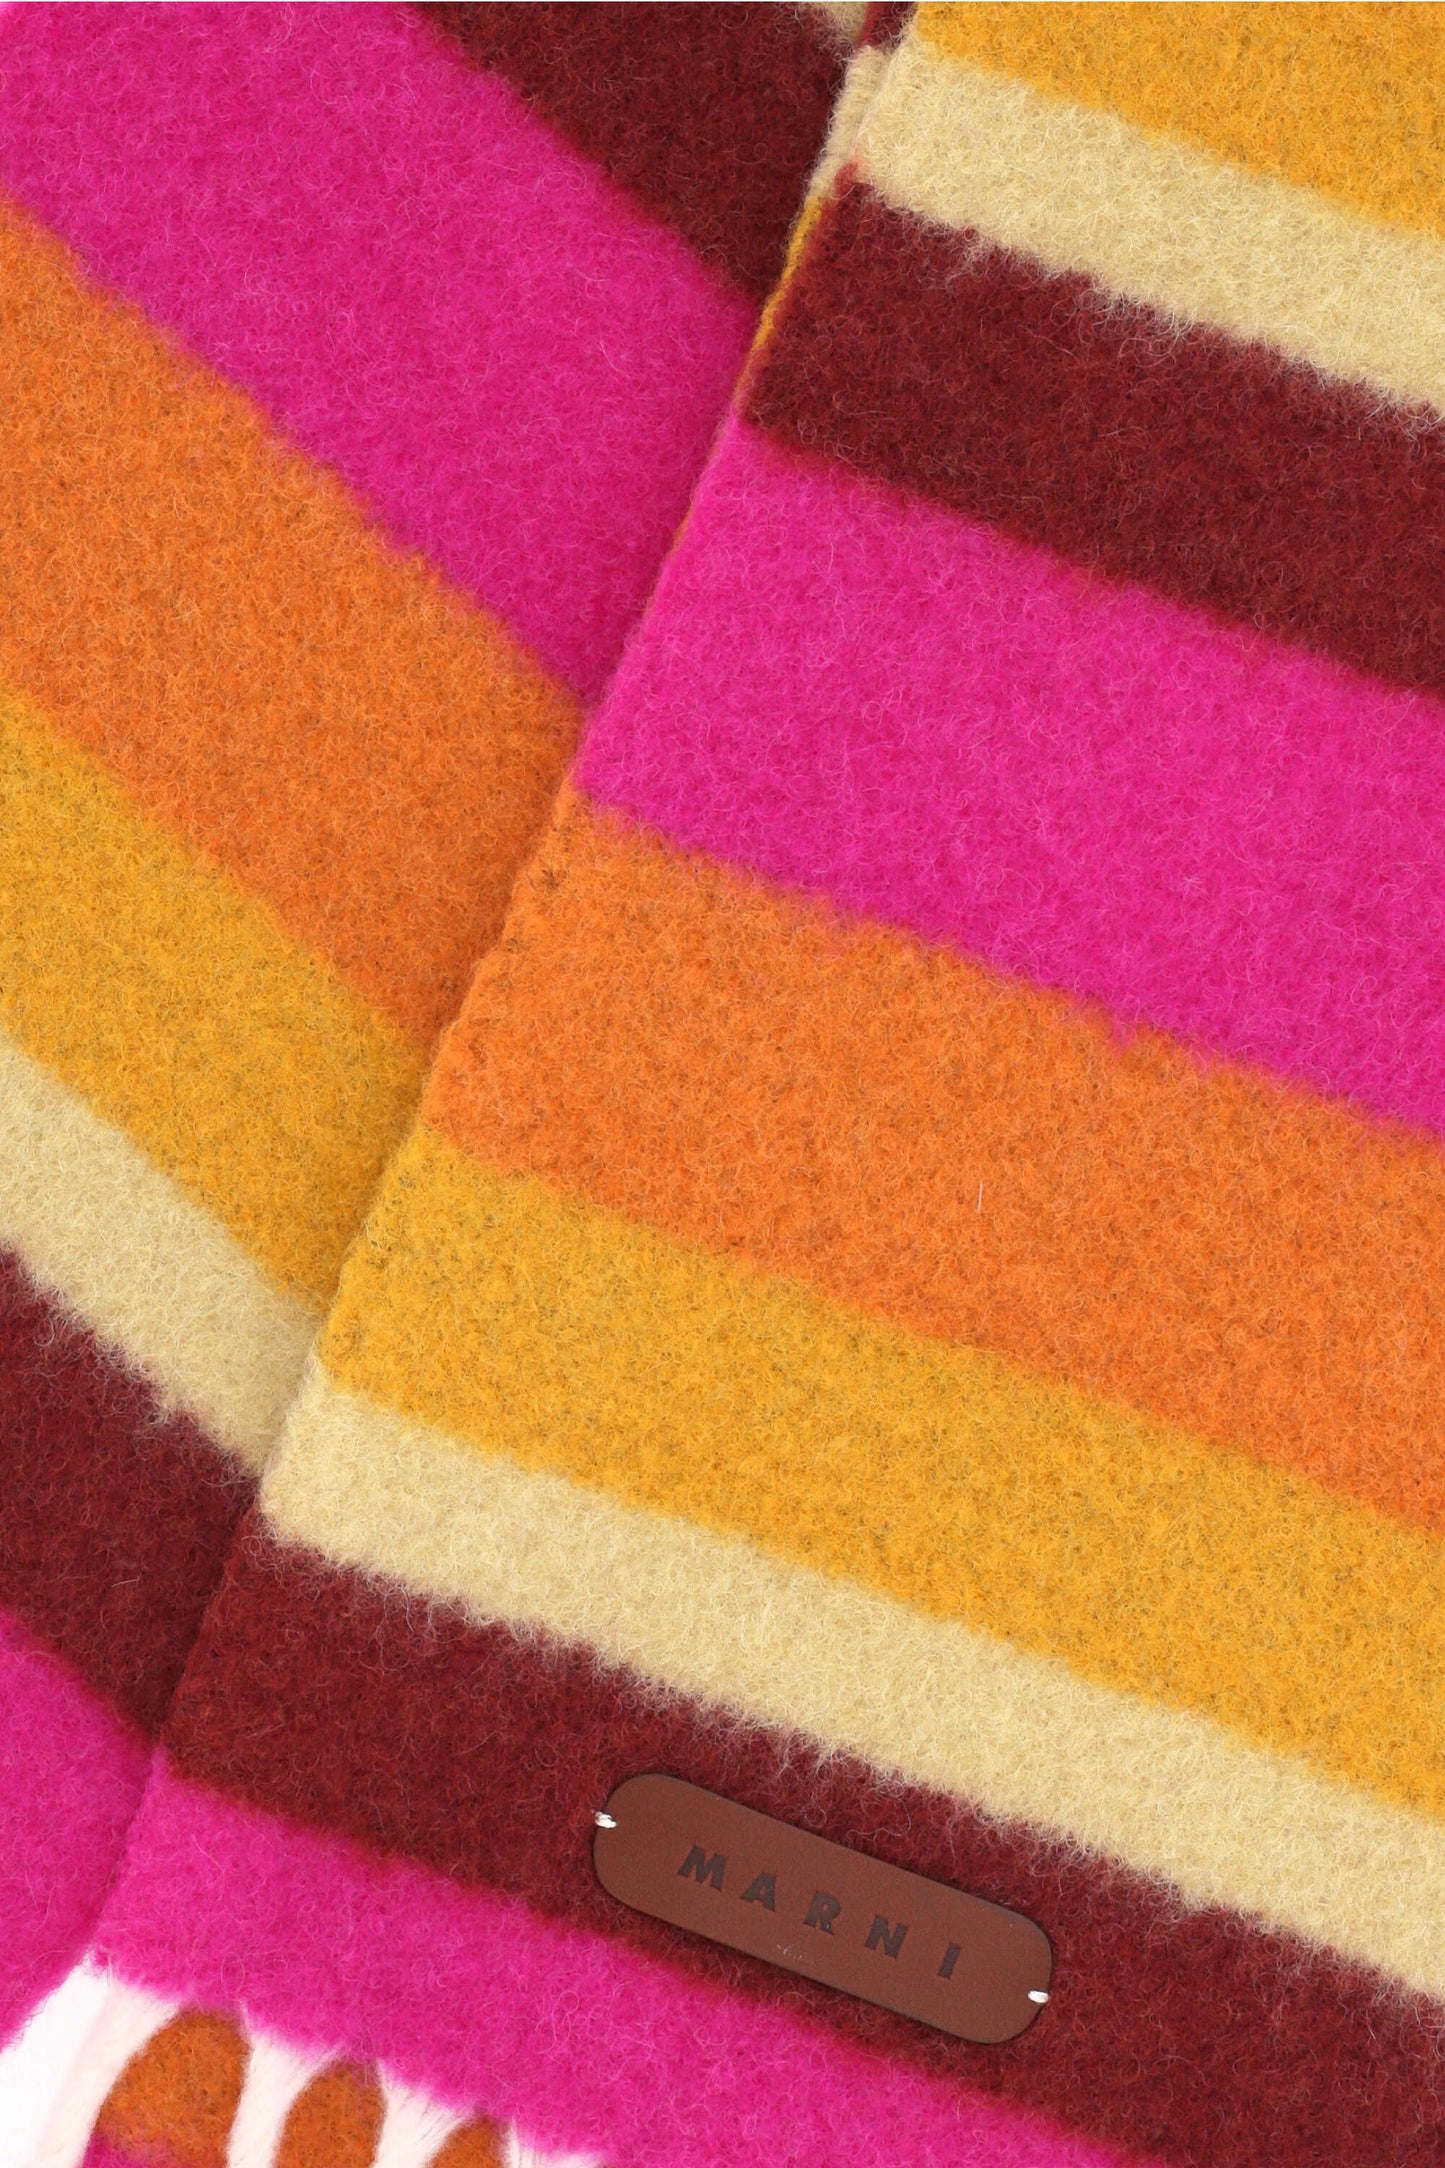 Marni Sciarpe Multicolour-Foulard-Marni- - Dresso